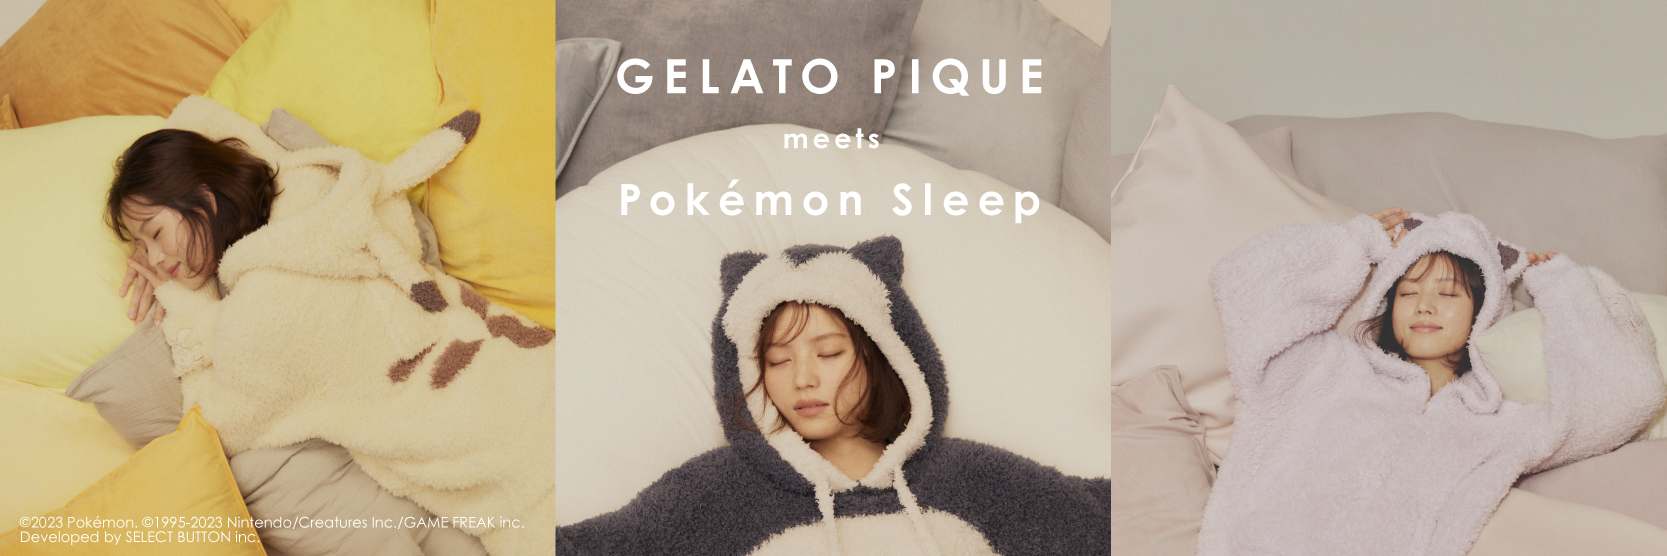 お問い合わせ多数につき『GELATO PIQUE meets Pokémon Sleep（ポケモン